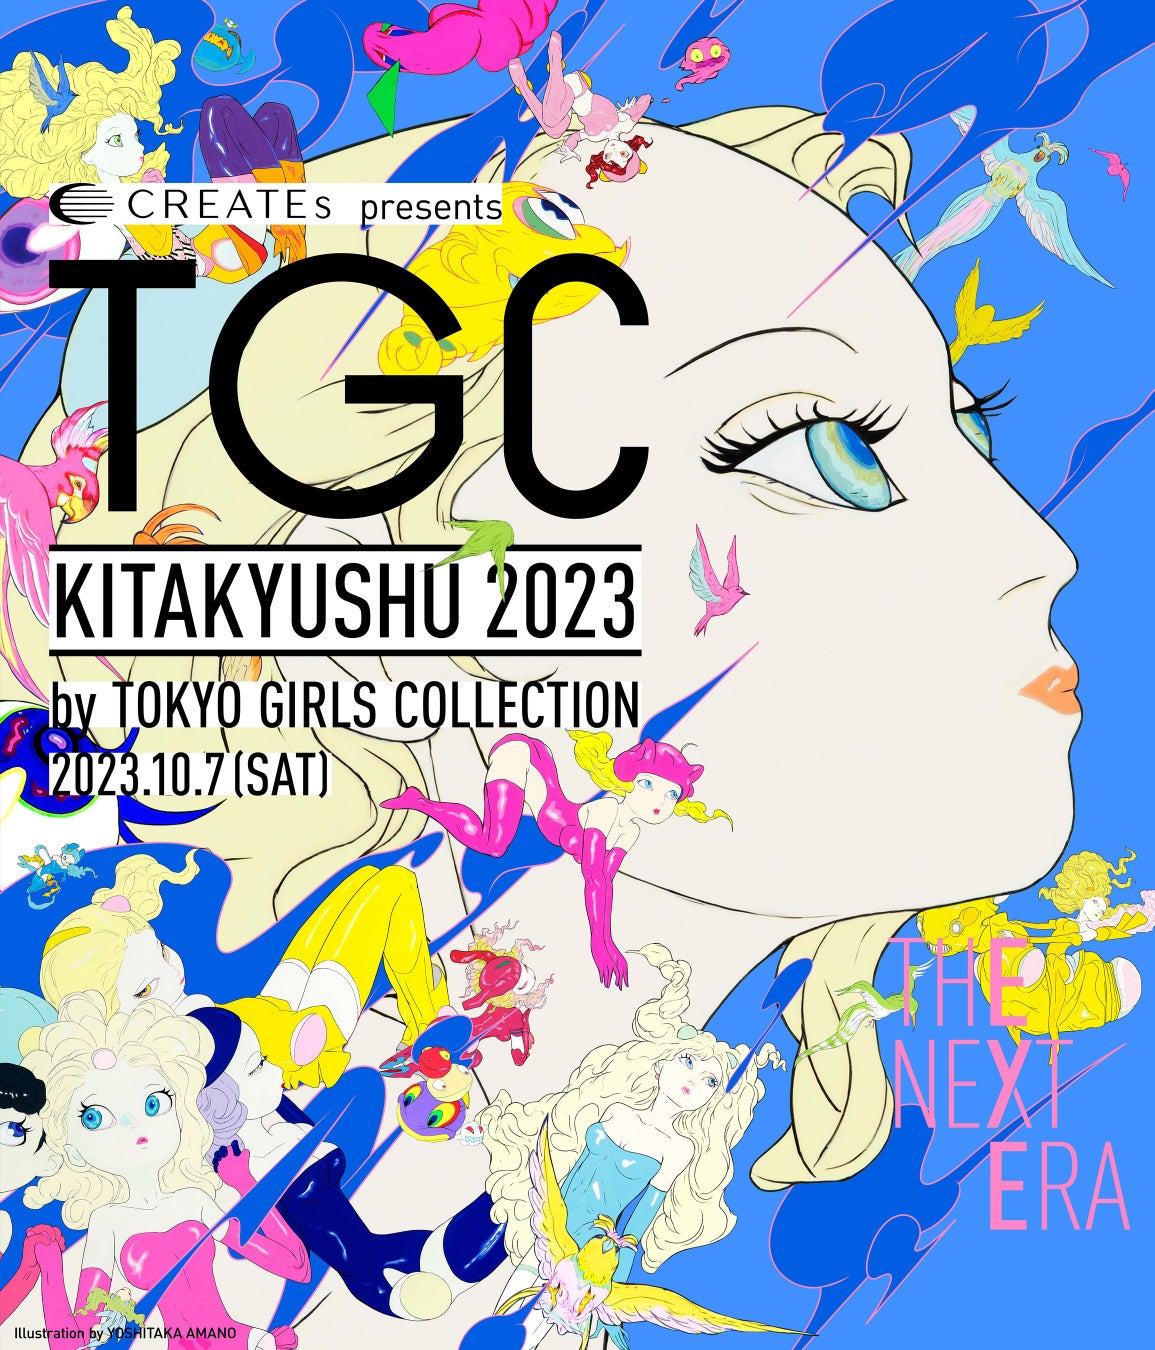 ガール世代に向けたファッションブランド「ELLEgirl」『CREATEs presents TGC KITAKYUSHU 2023 by TOKYO GIRLS COLLECTION』出展のサブ画像2